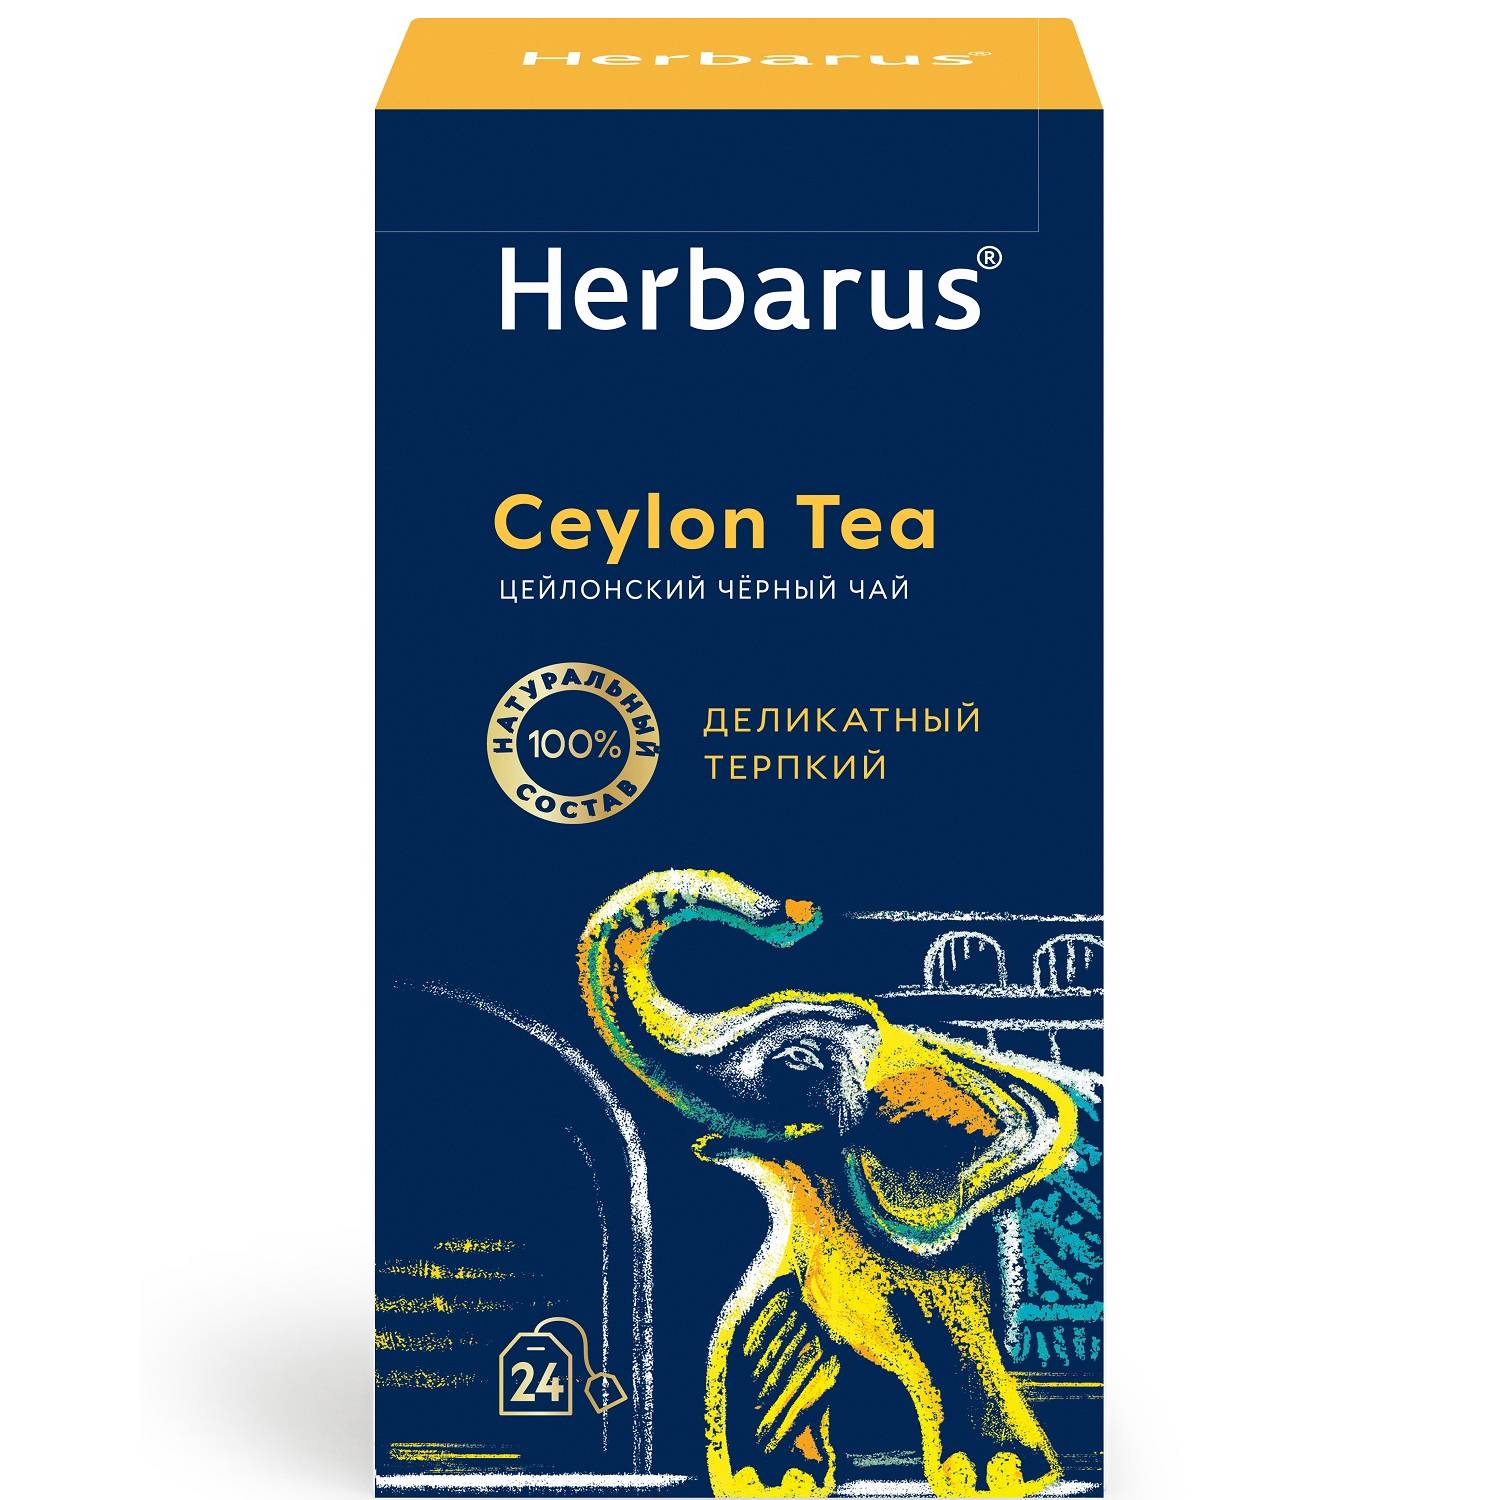 Herbarus Цейлонский черный чай Ceylon Tea, 24 пакетика х 2 г (Herbarus, Классический чай) чай herbarus черный с добавками дикий терпкий 24 пакетика